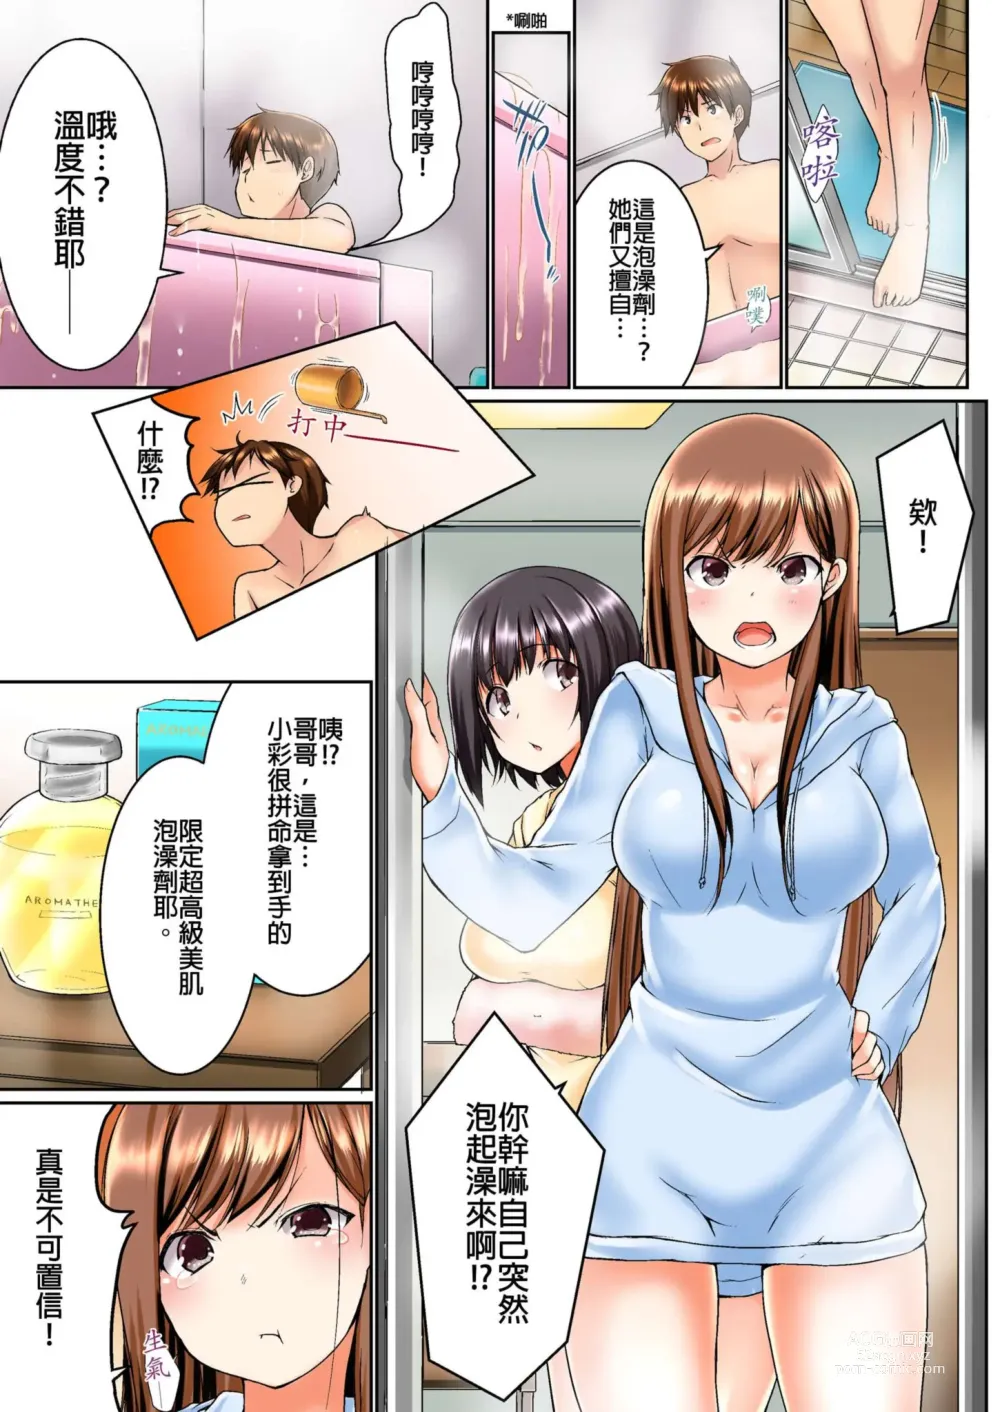 Page 4 of manga 在洗澡時哥哥的那個…堅挺的東西正在我的裡面… Ch. 1-29